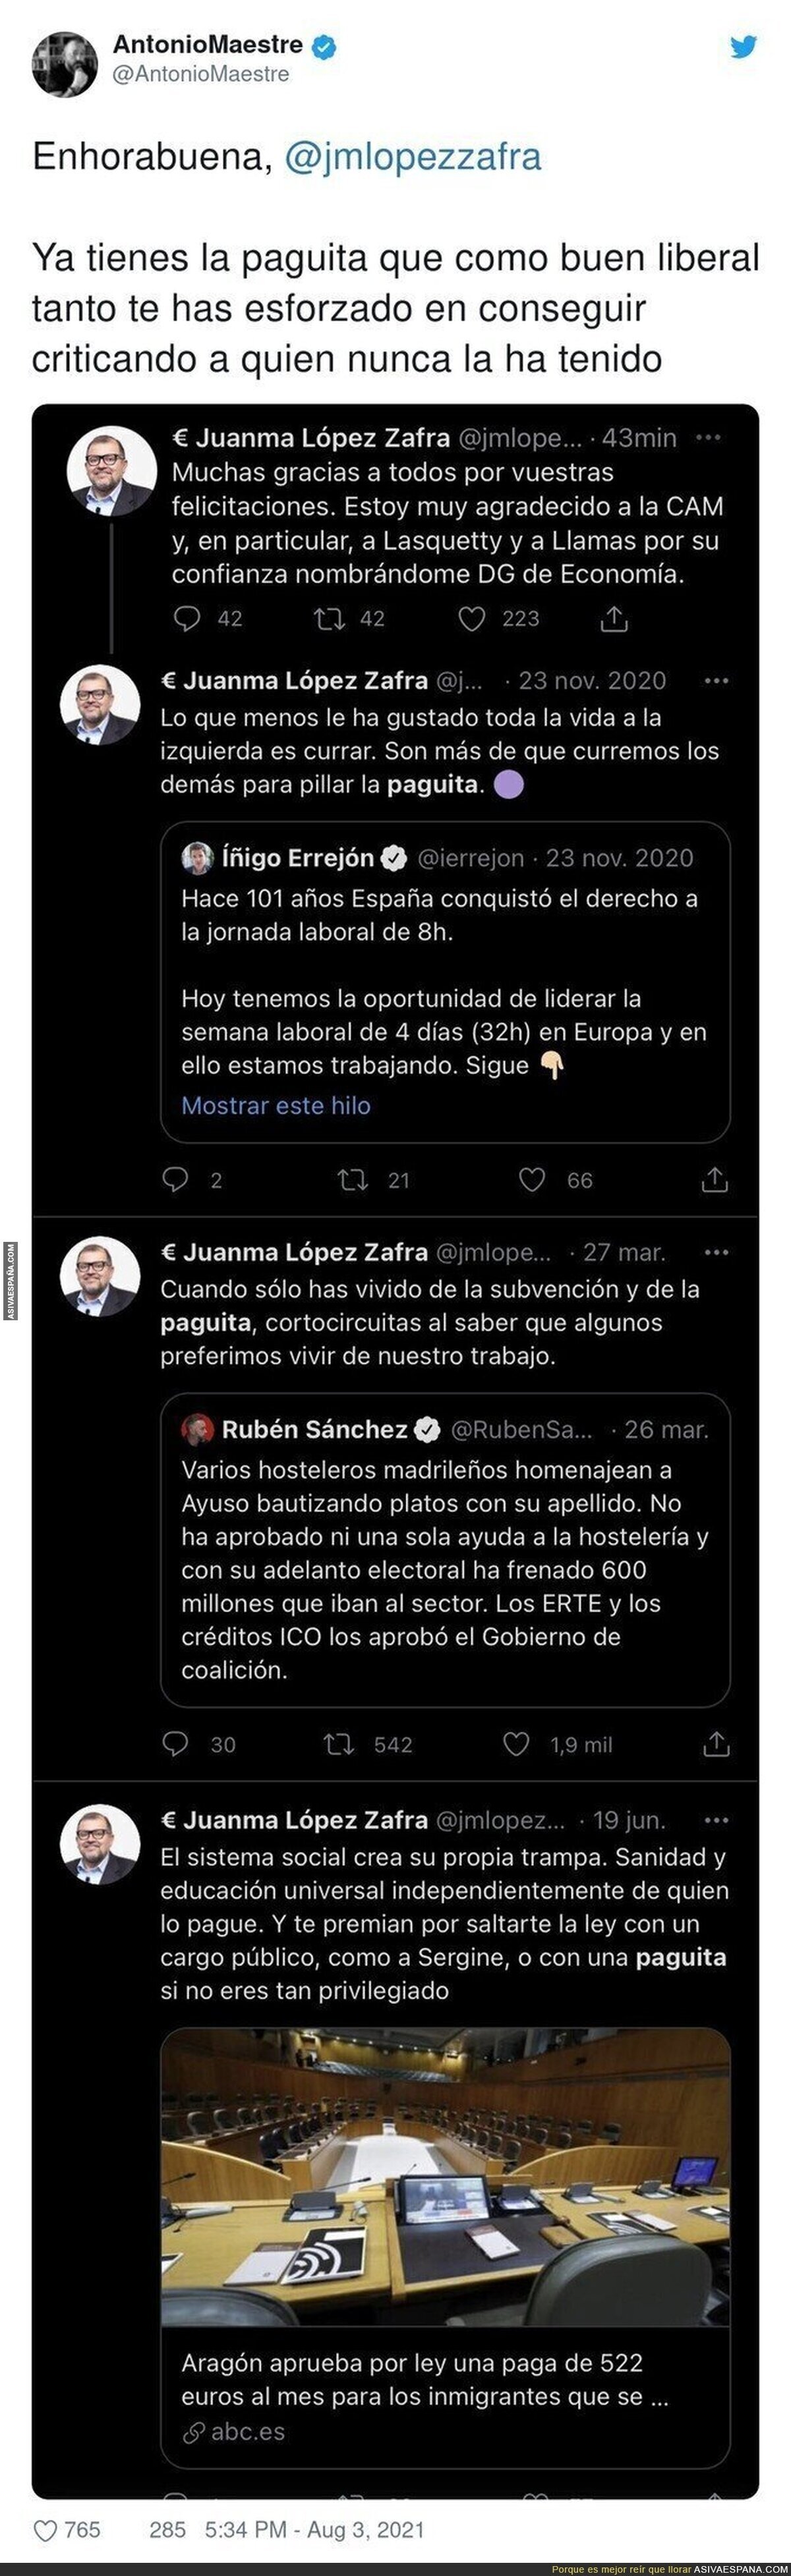 Juanma López Zafra ya forma parte de lo que lleva criticando tantos meses atrás en estos tuits